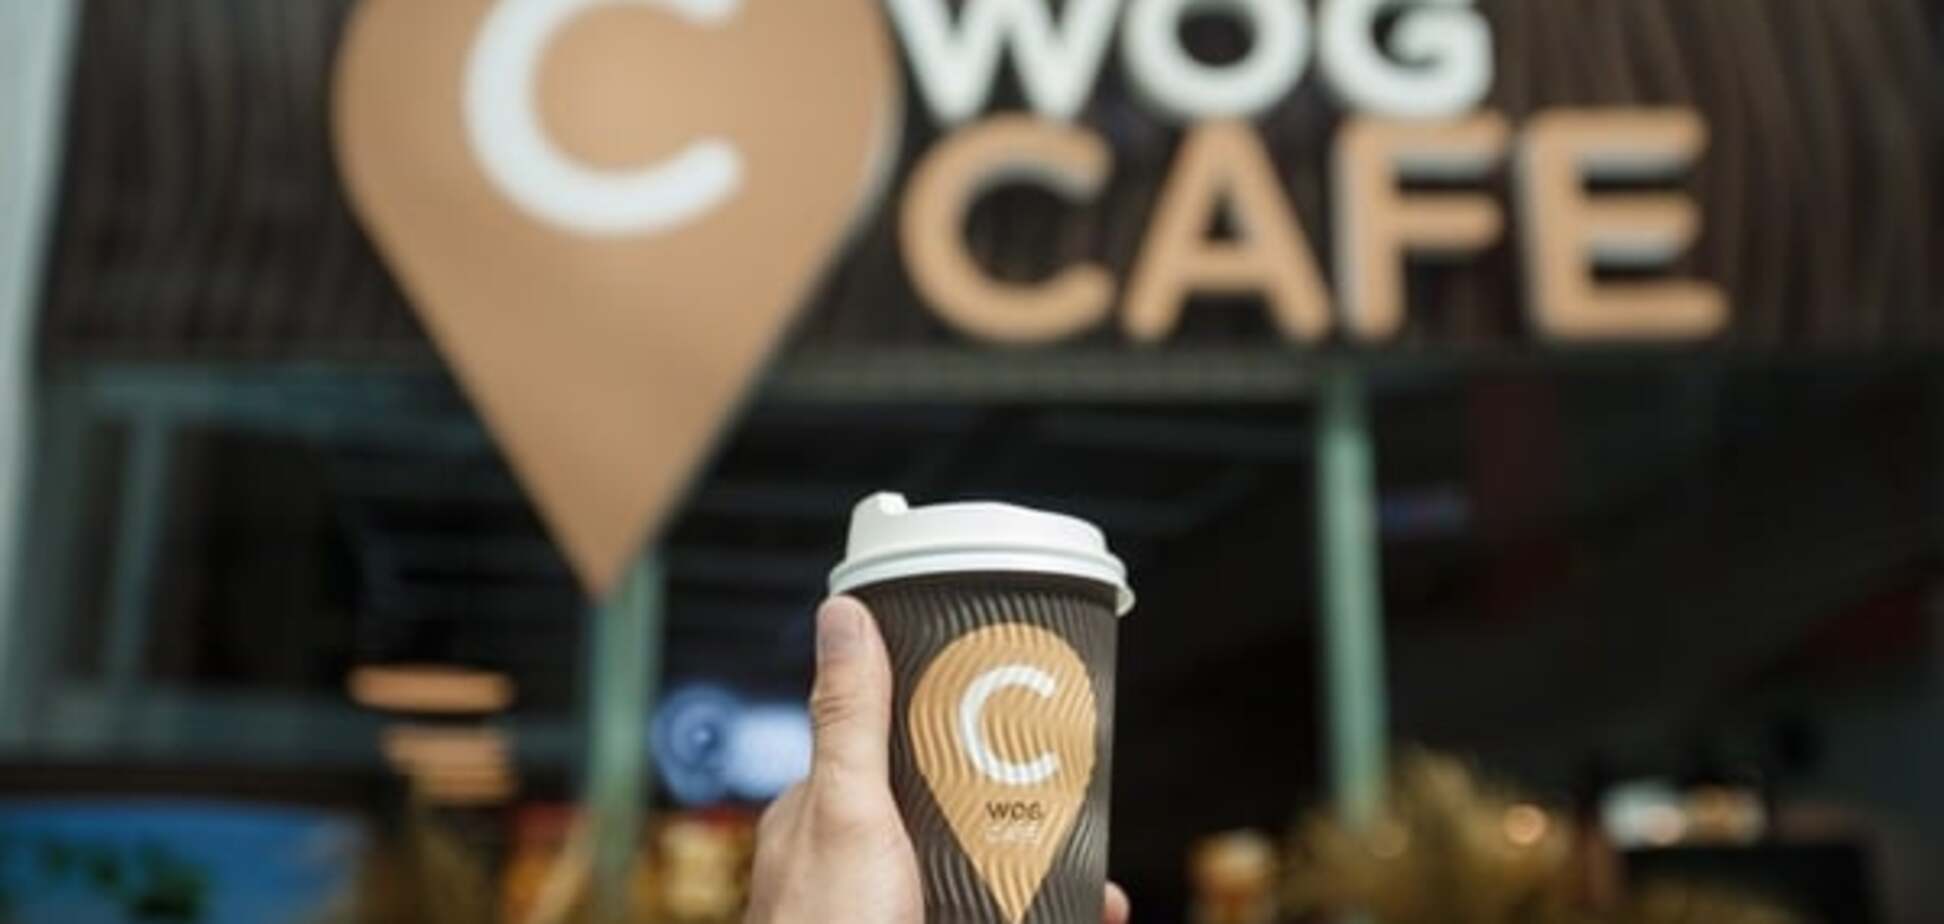 Во Львове открылось новое WOG CAFE 